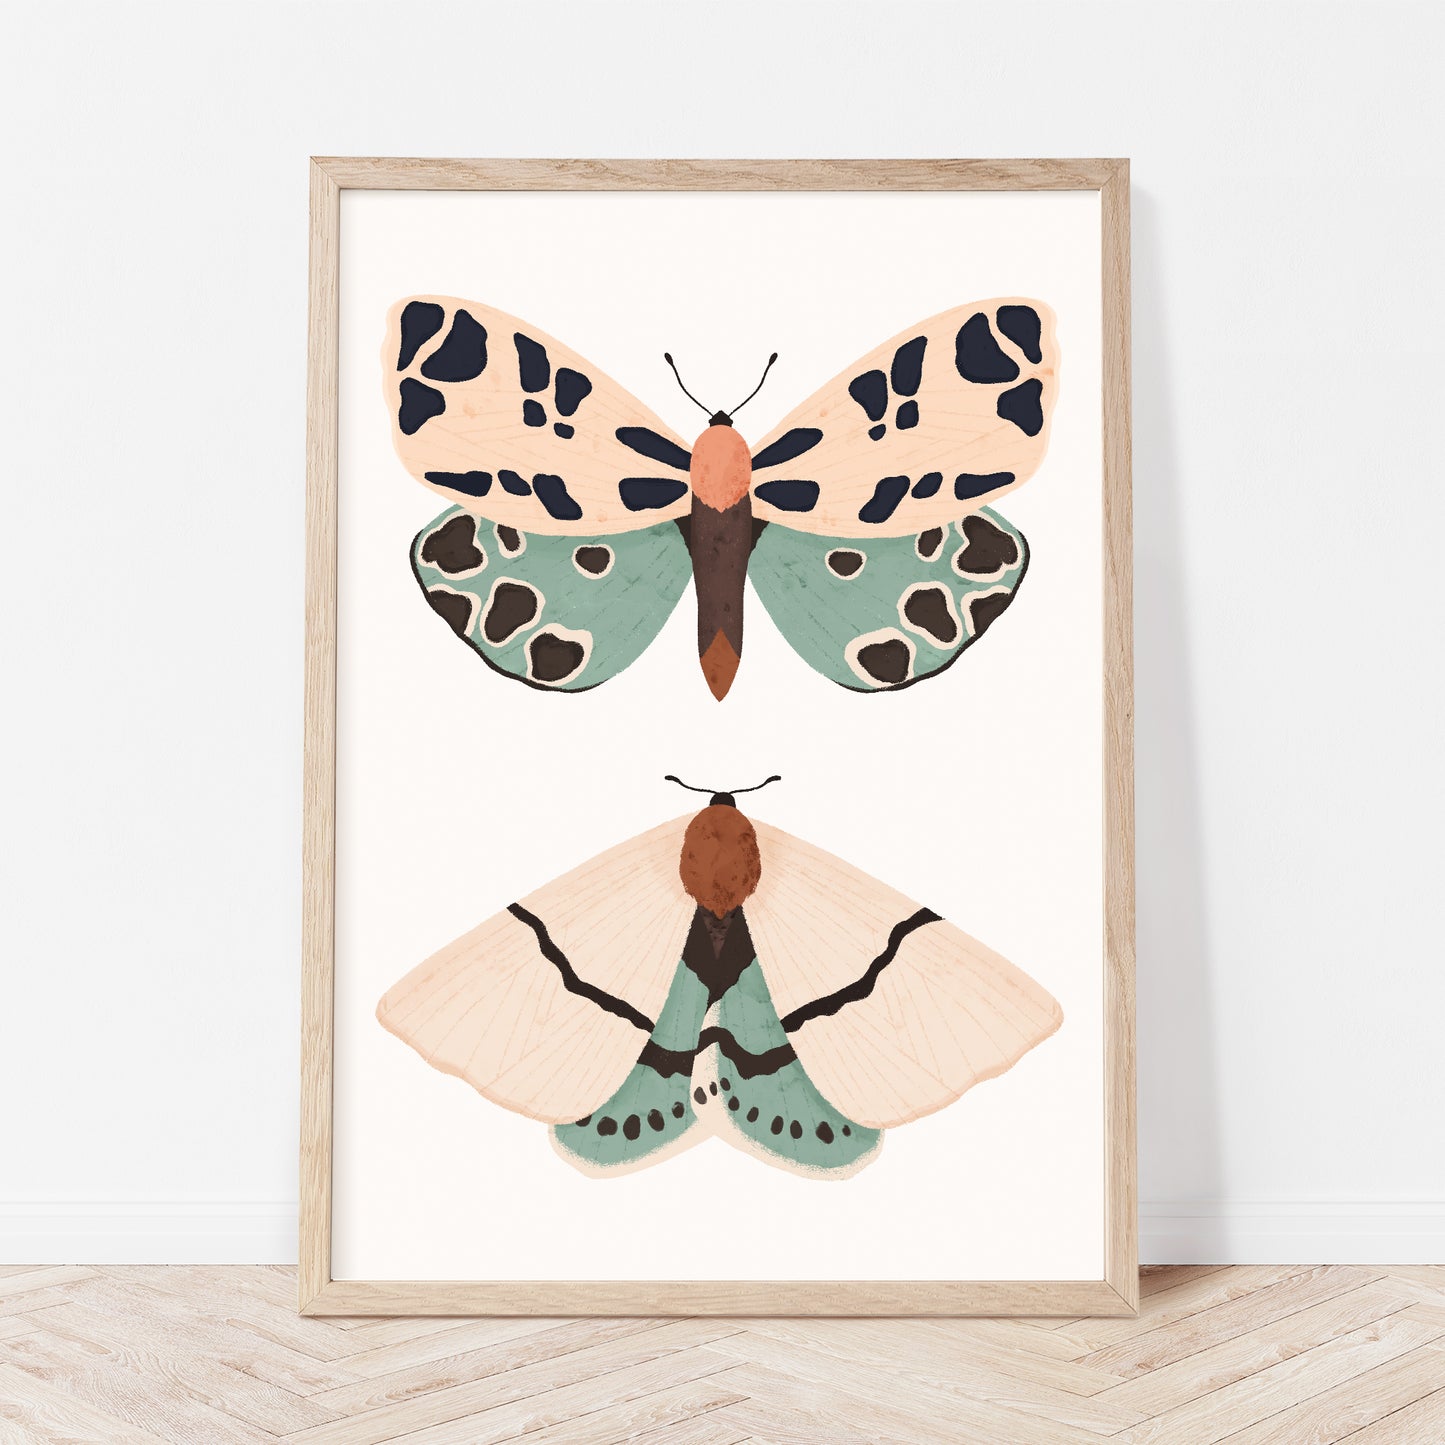 Butterflies - Set of two nursery prints